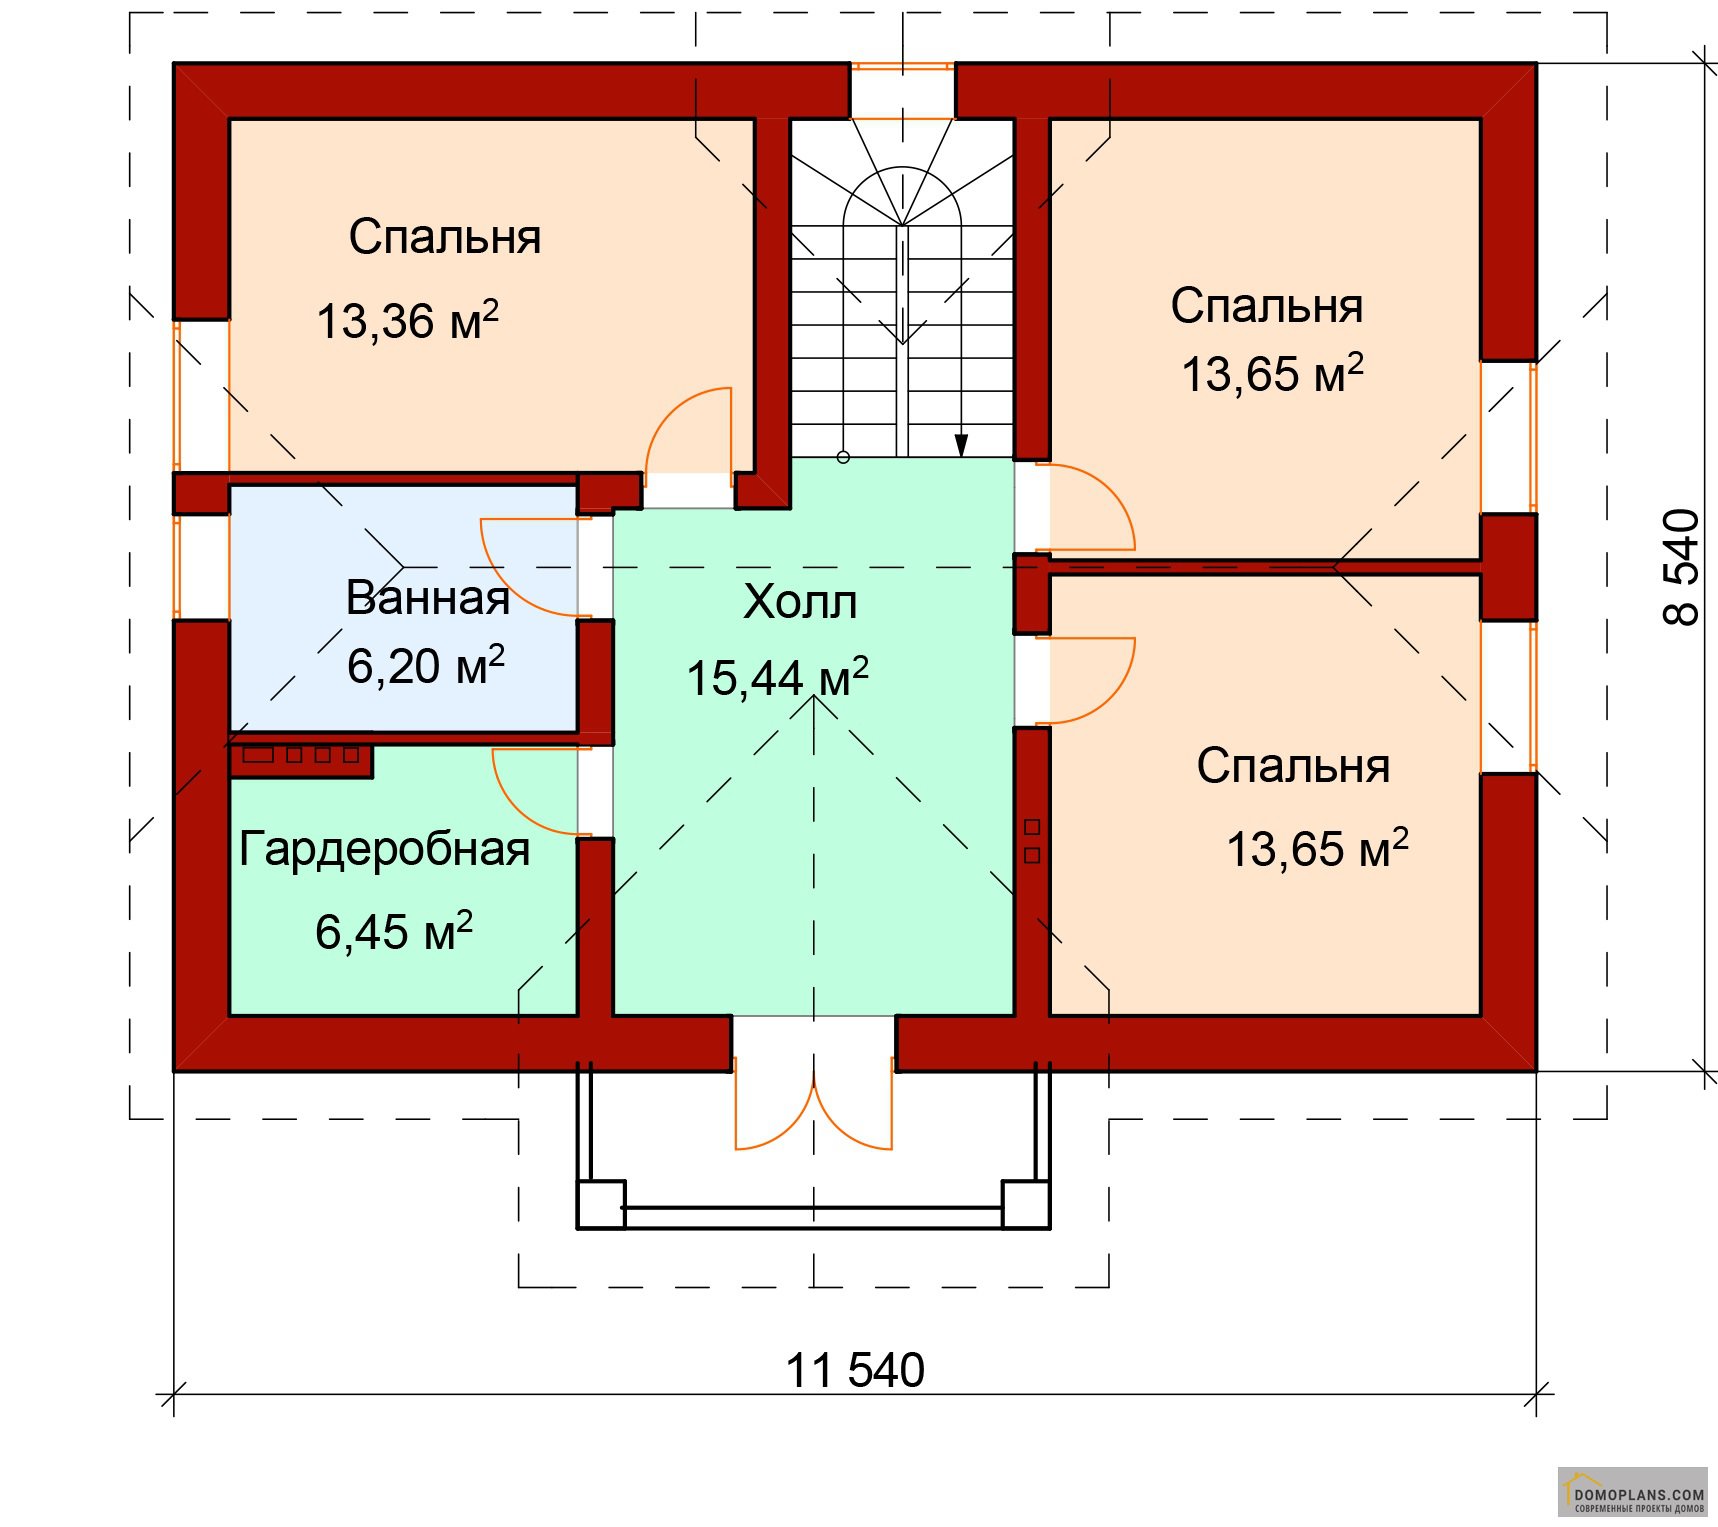 Планировка 2 этажа частного дома с лестницей с 3 спальнями